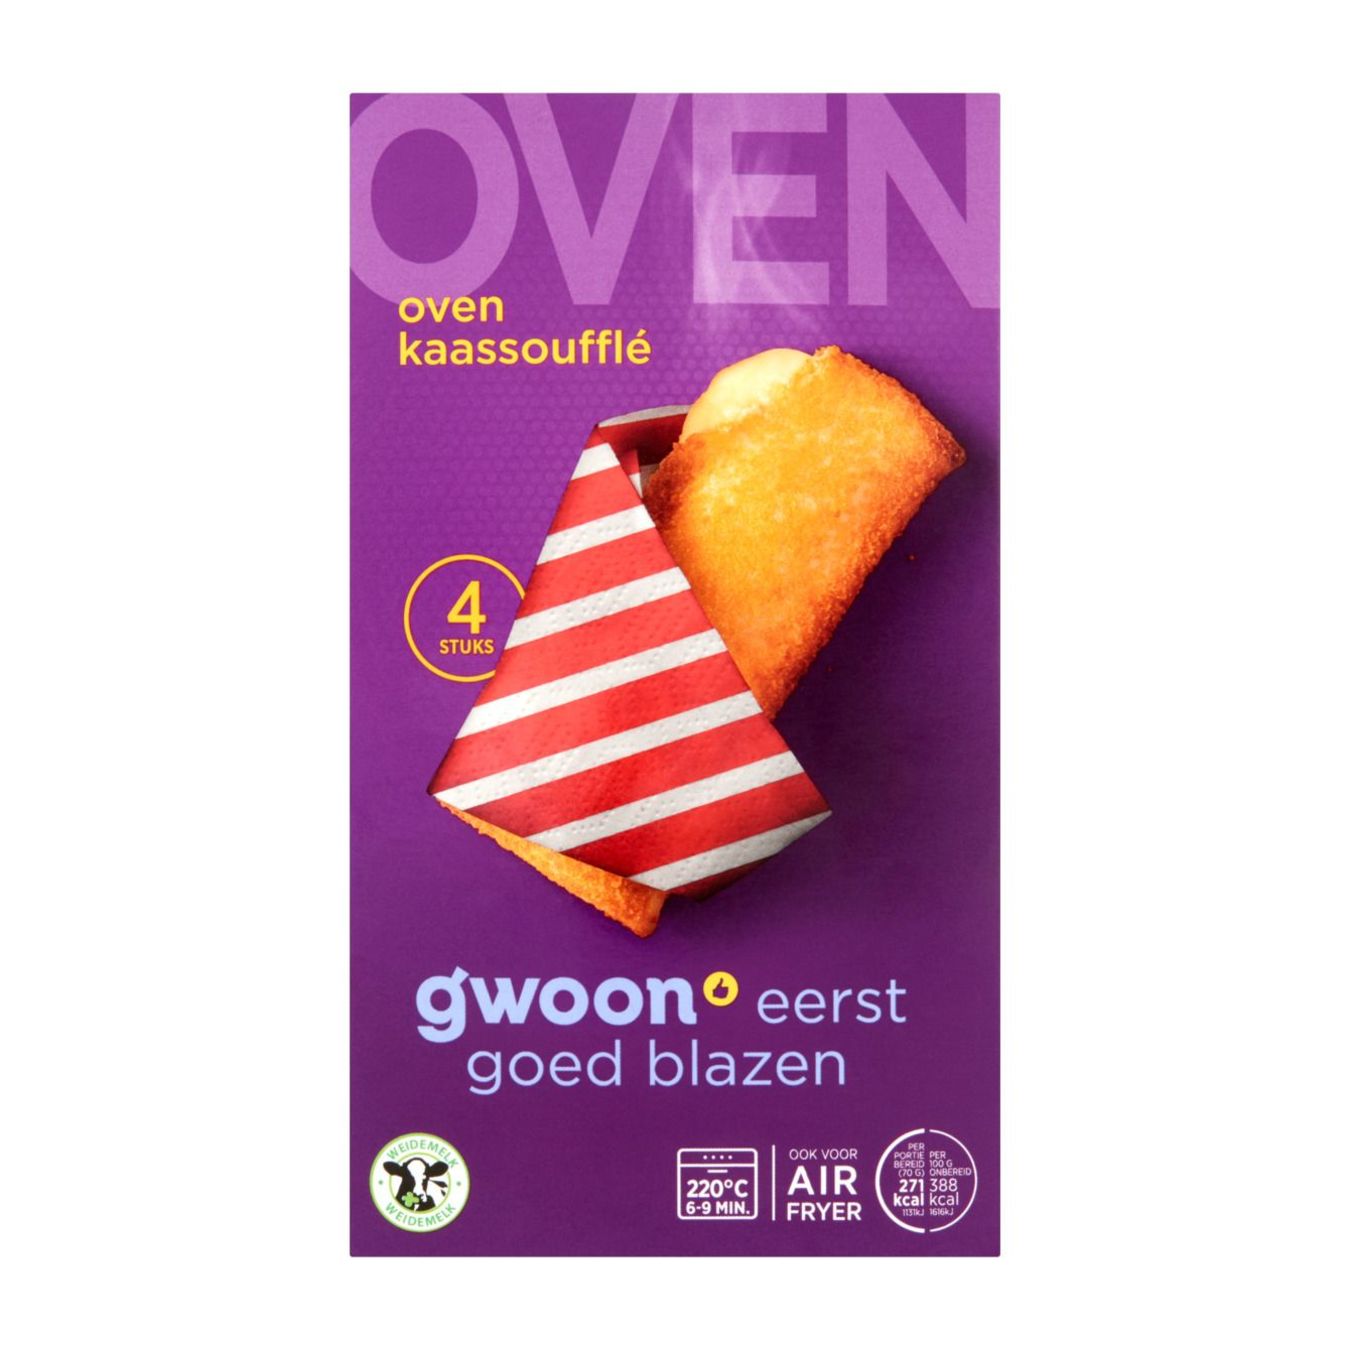 g’woon Oven kaassoufflés